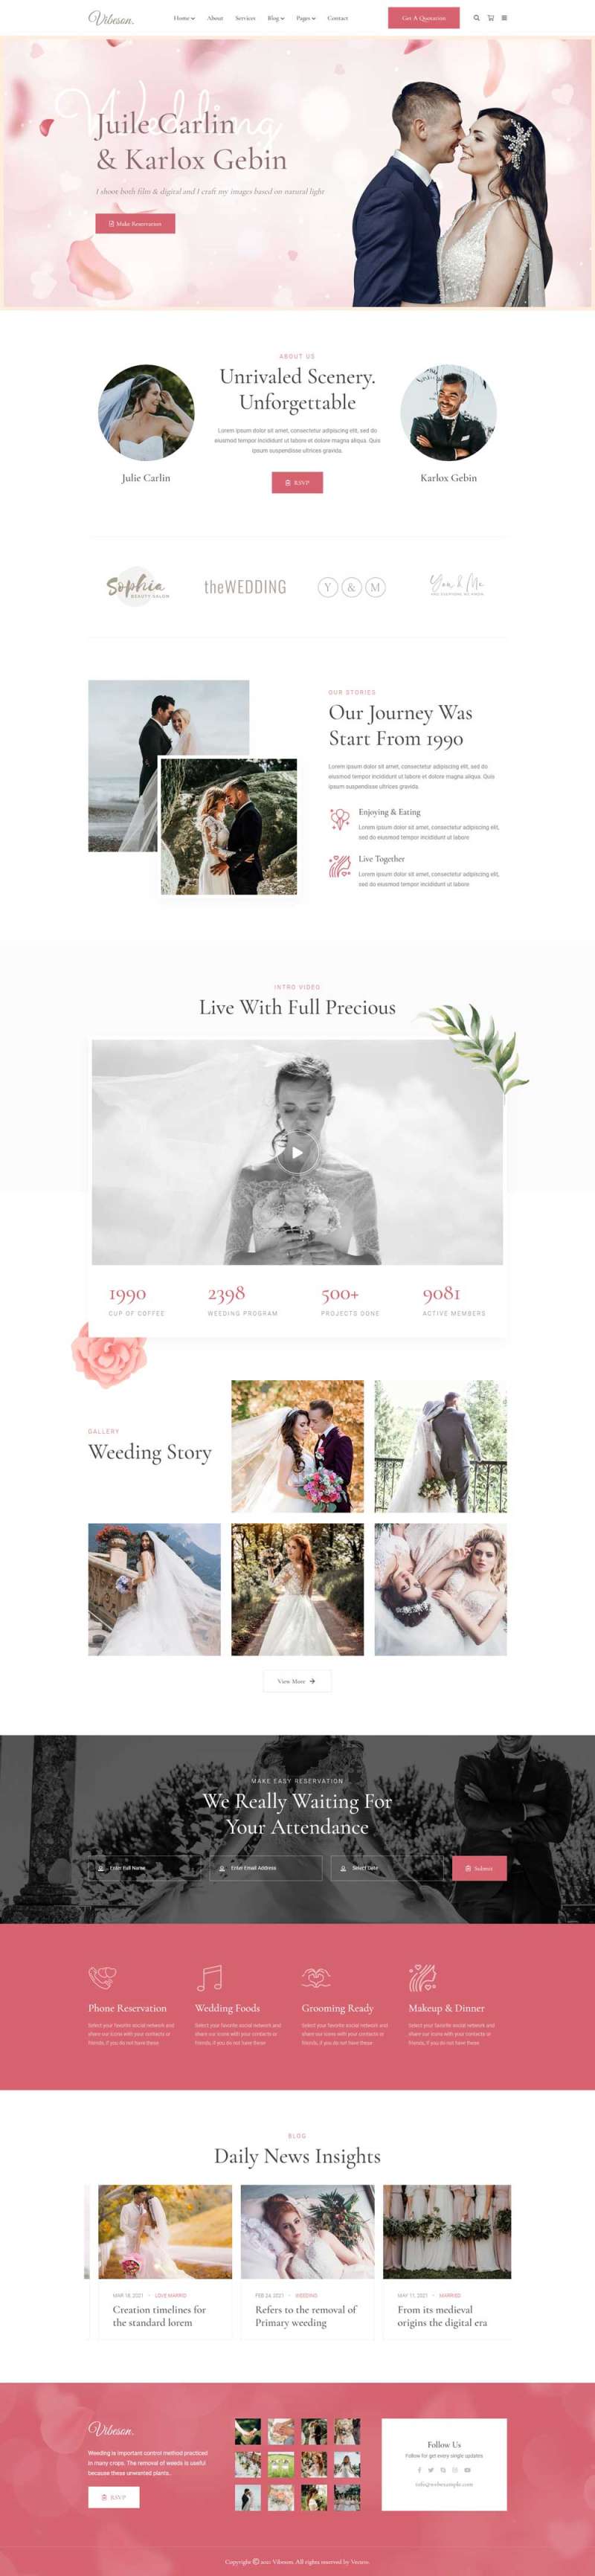 精美婚礼活动策划摄影HTML模板7635